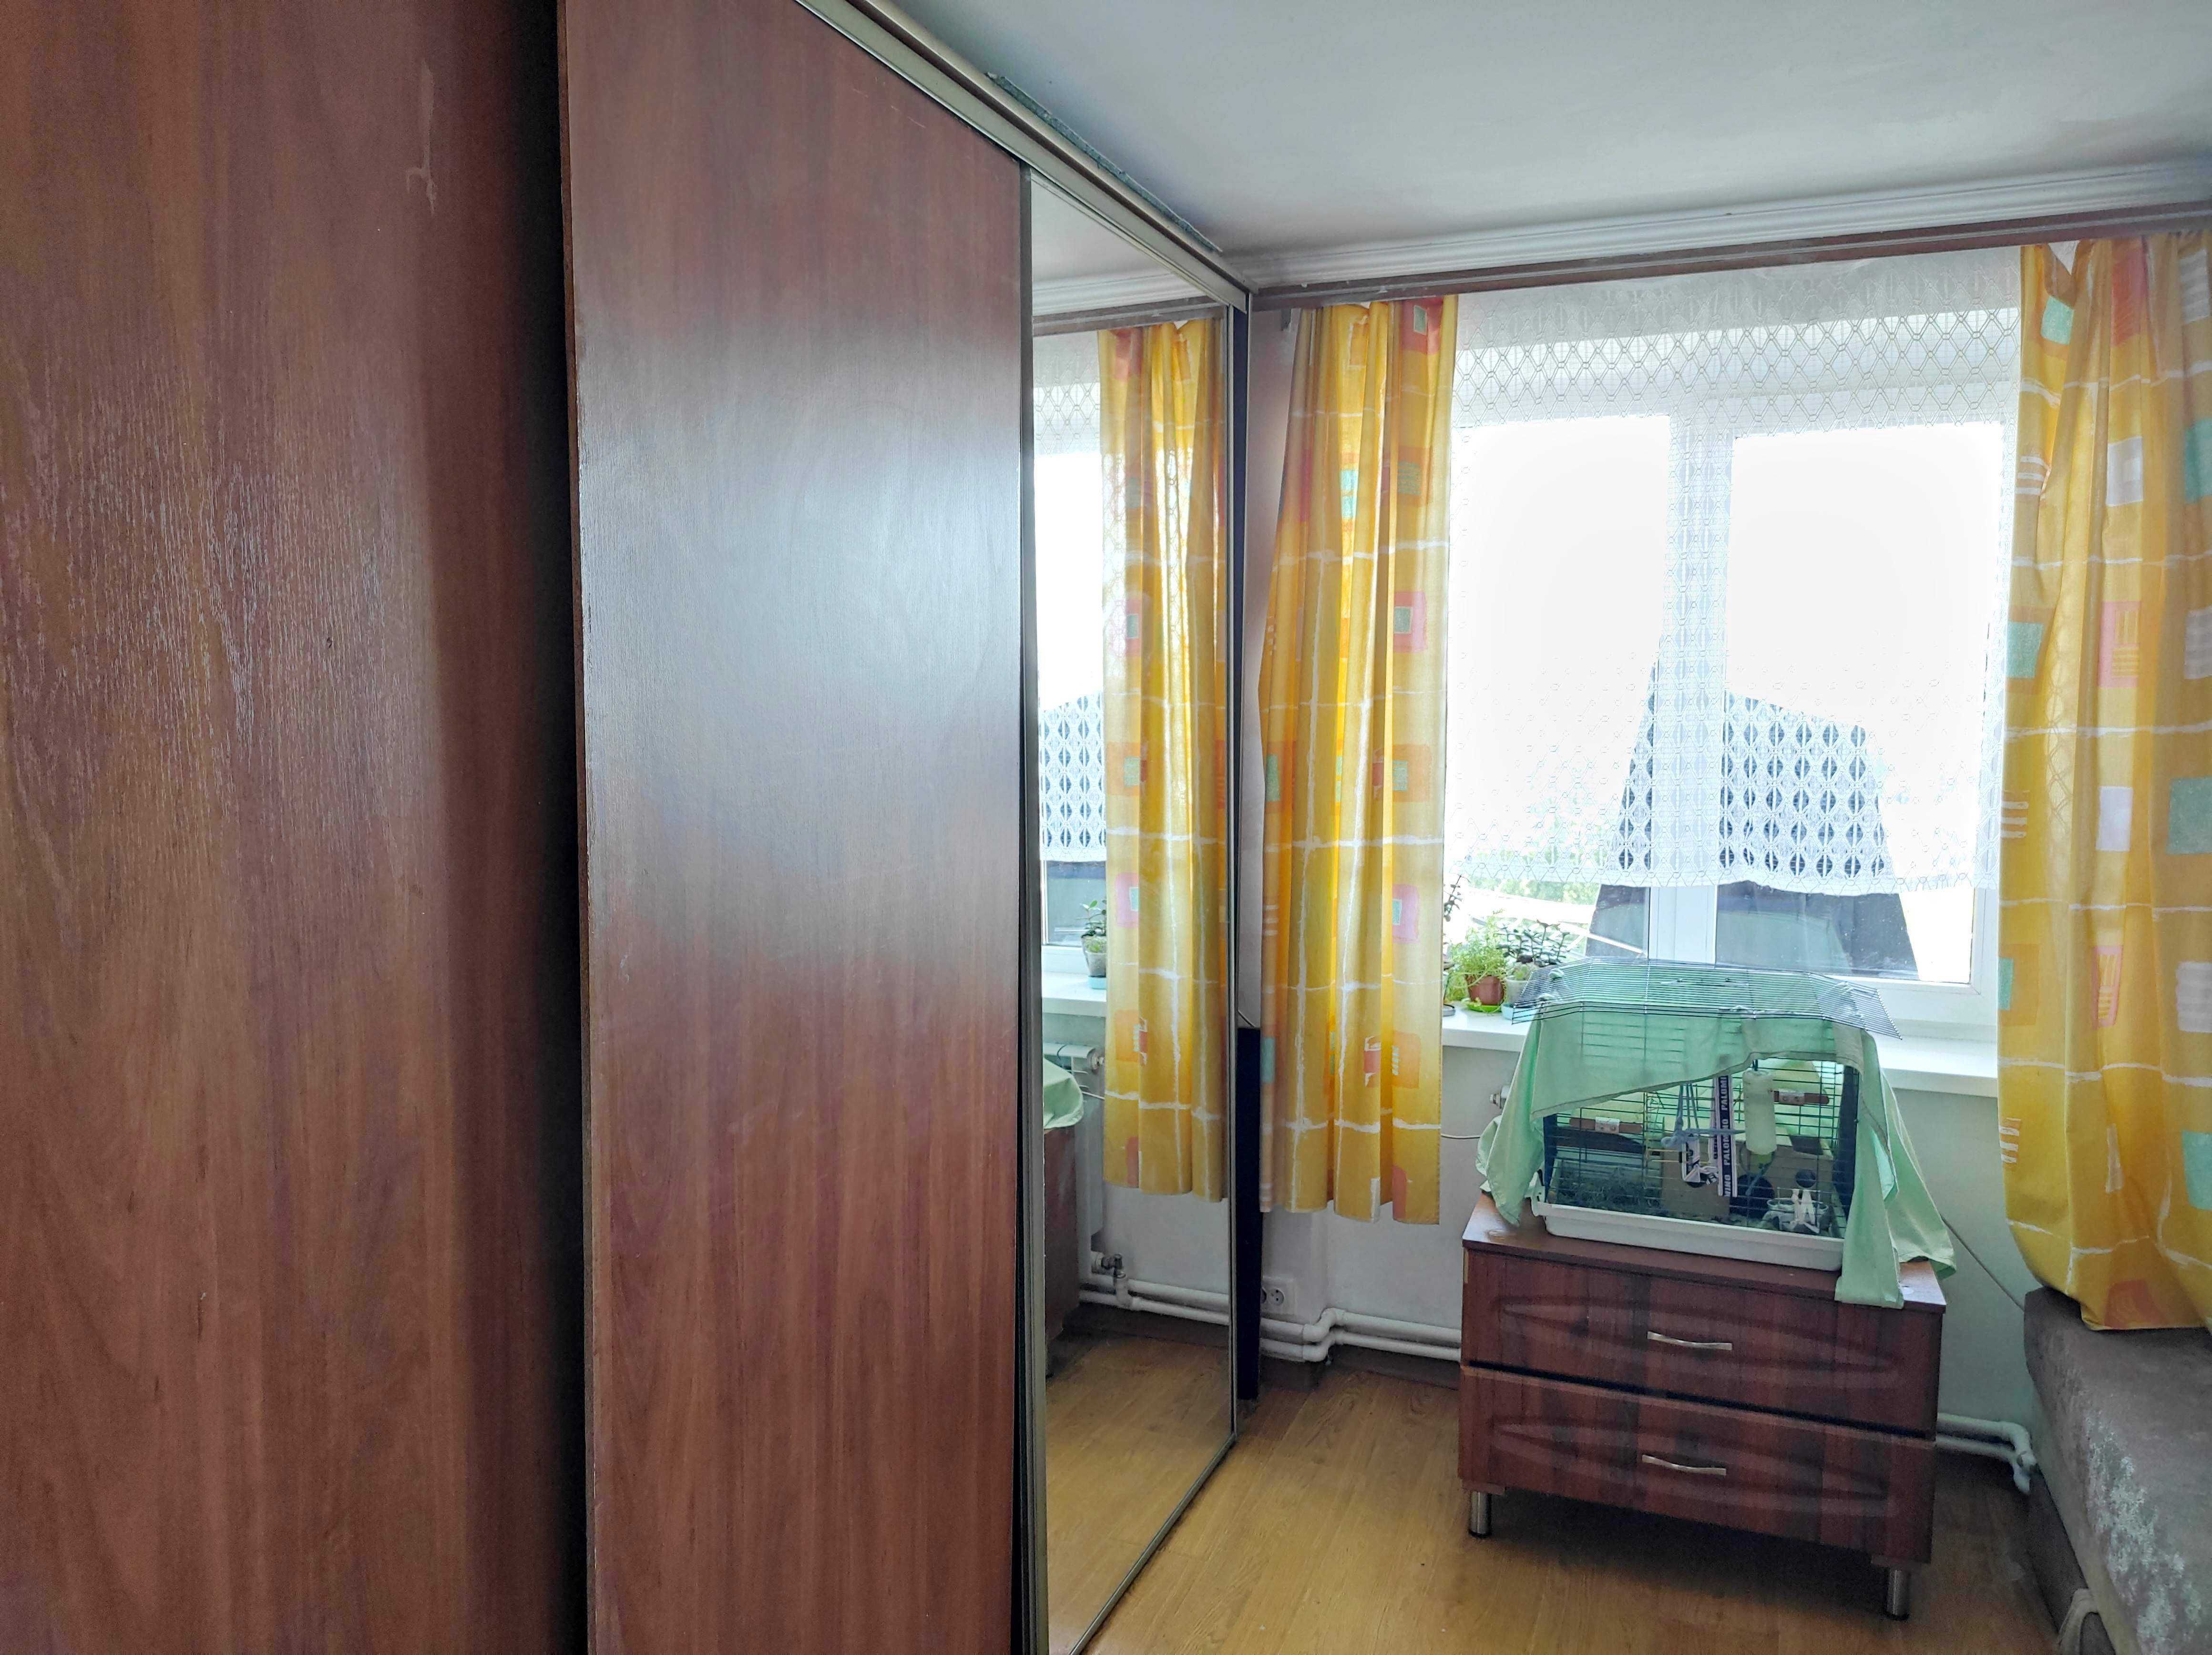 Продається 3-х. кім. квартира з видом на гори по вул. Грушевського